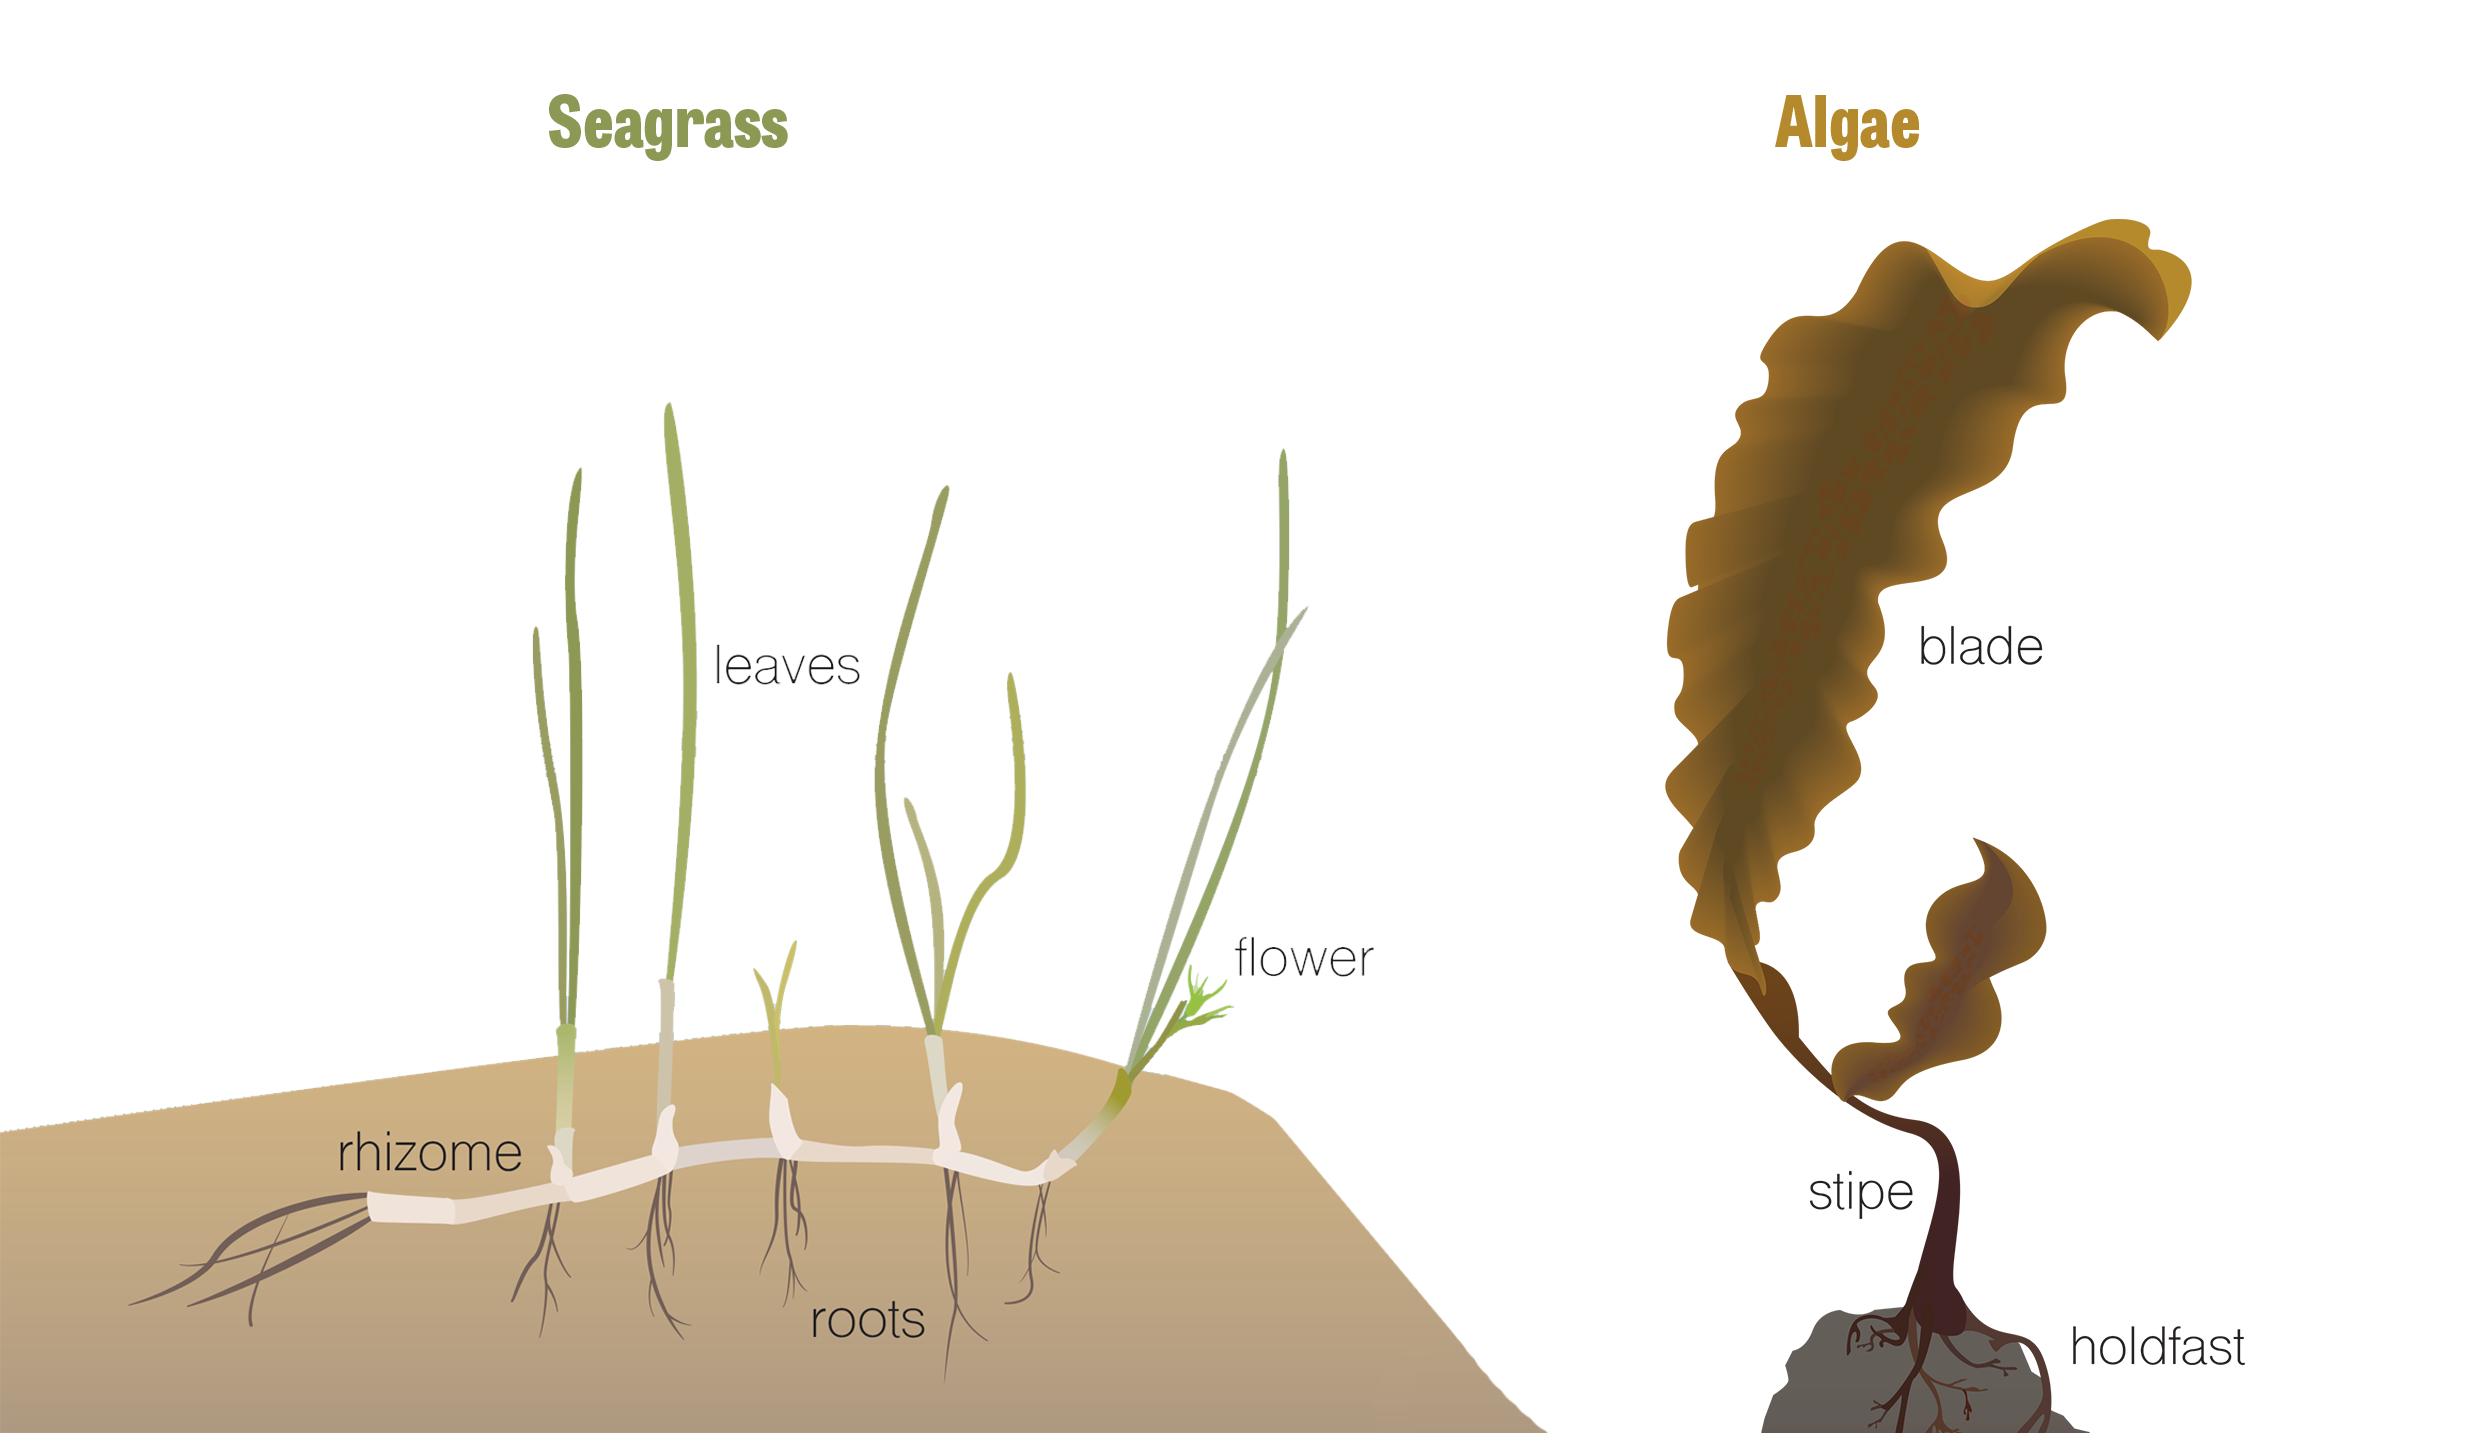 A graphic comparing seagrass and algae